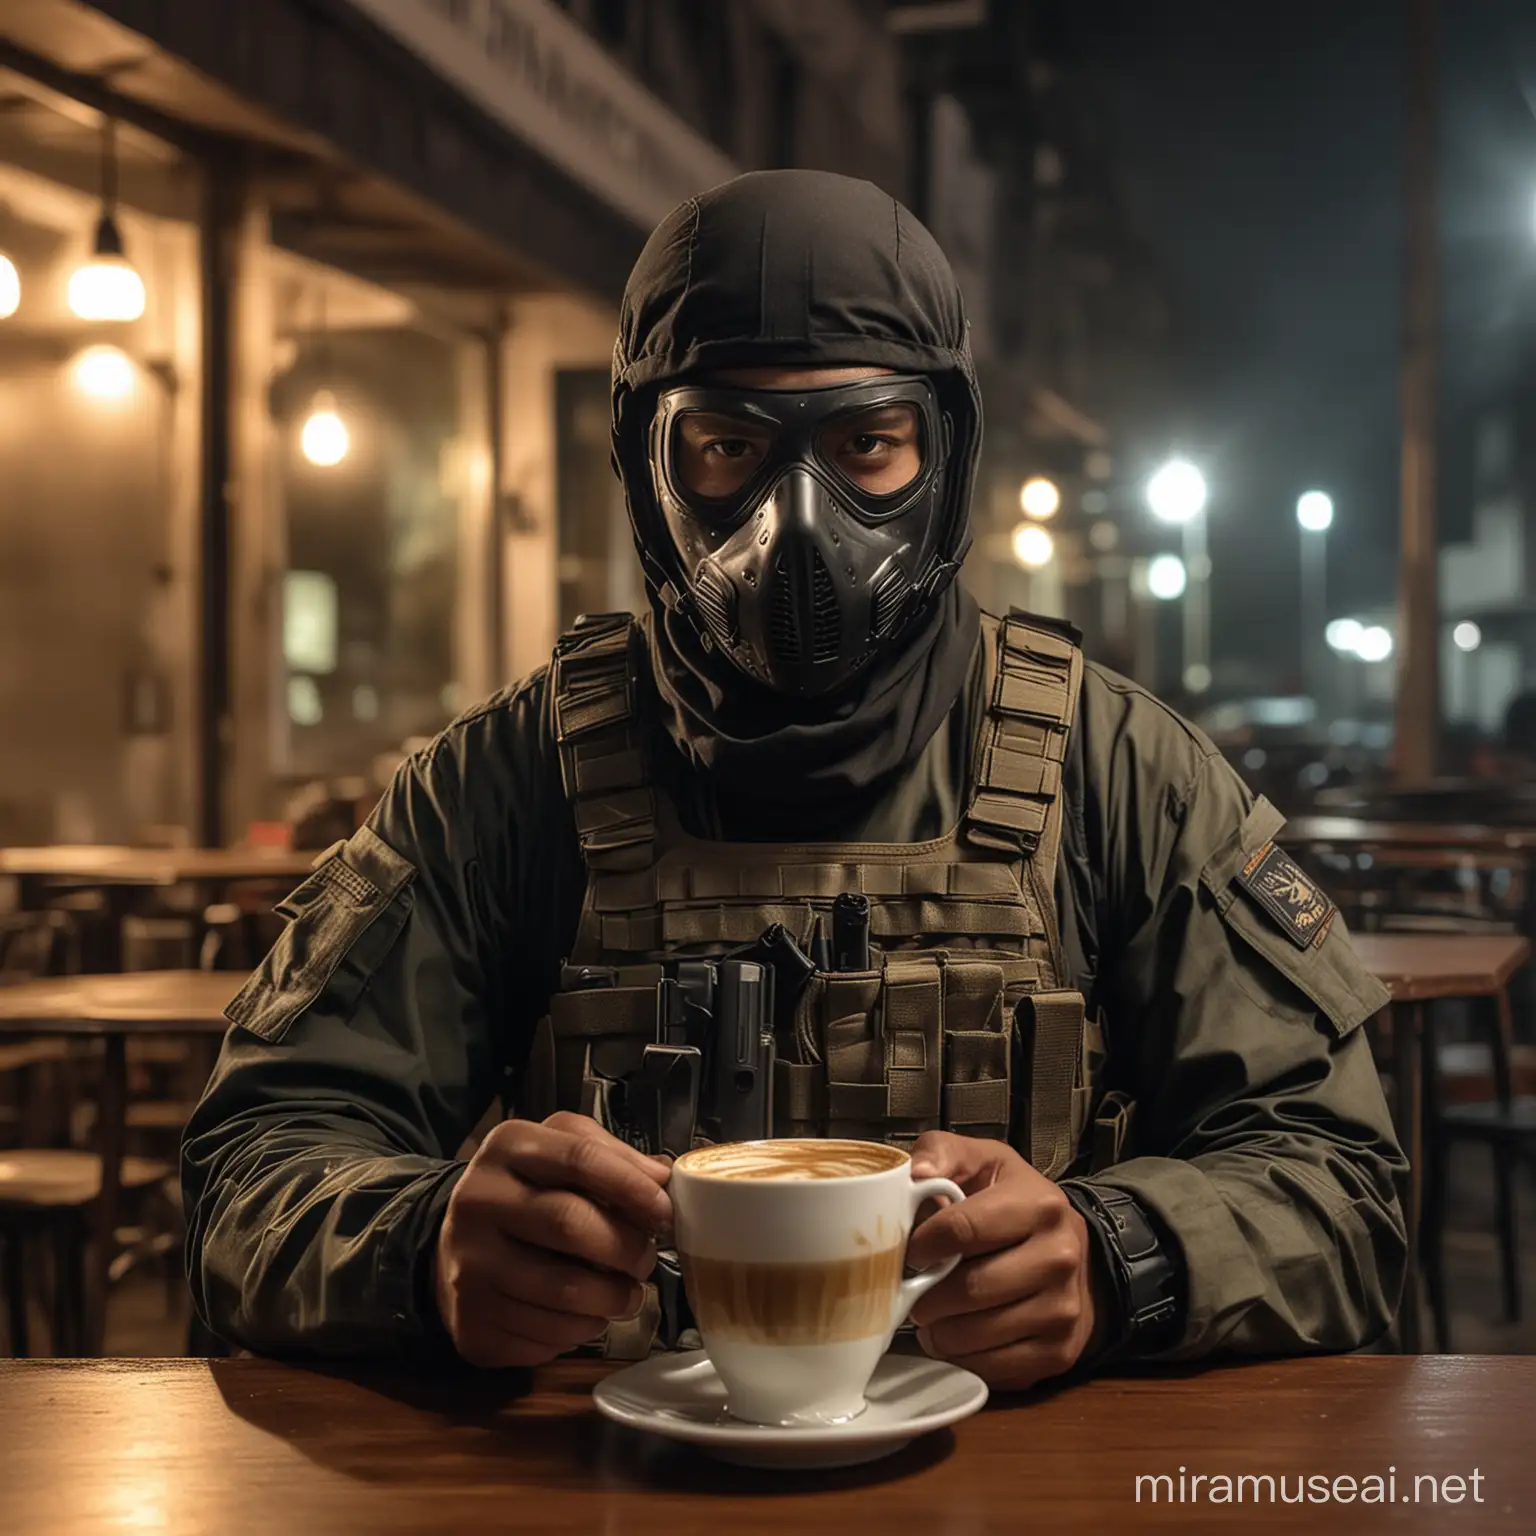 Malaysia Komando in Tactical Gear Enjoying Cappuccino Coffee at Night in Cafe